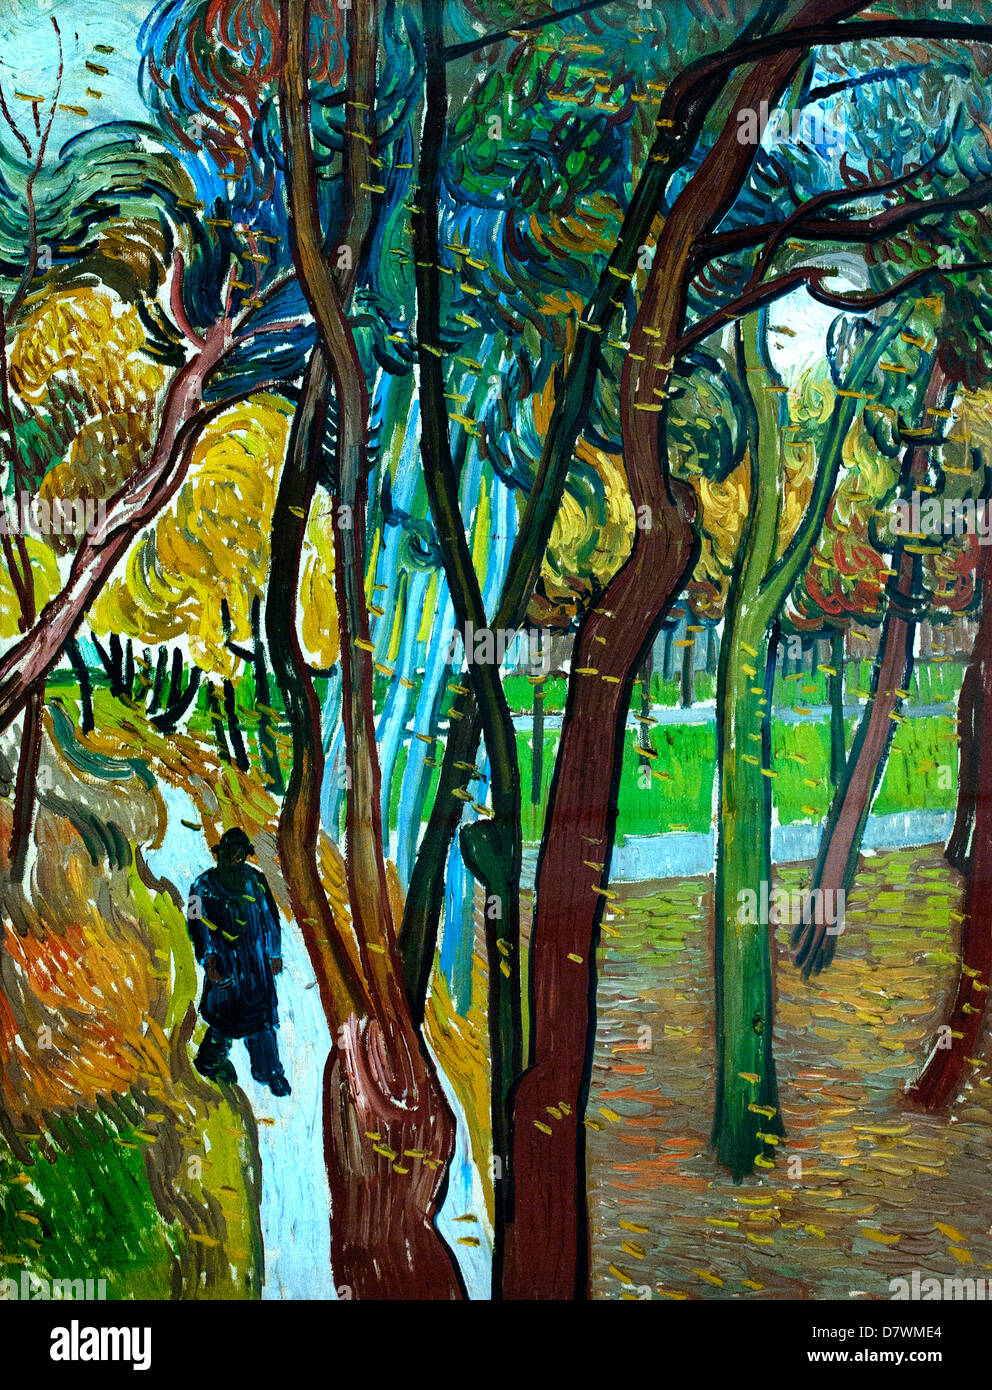 Le jardin de saint Paul's Hospital - la chute des feuilles 1889 Vincent van Gogh 1853 - 1890 Pays-Bas néerlandais l'Impressionnisme Banque D'Images